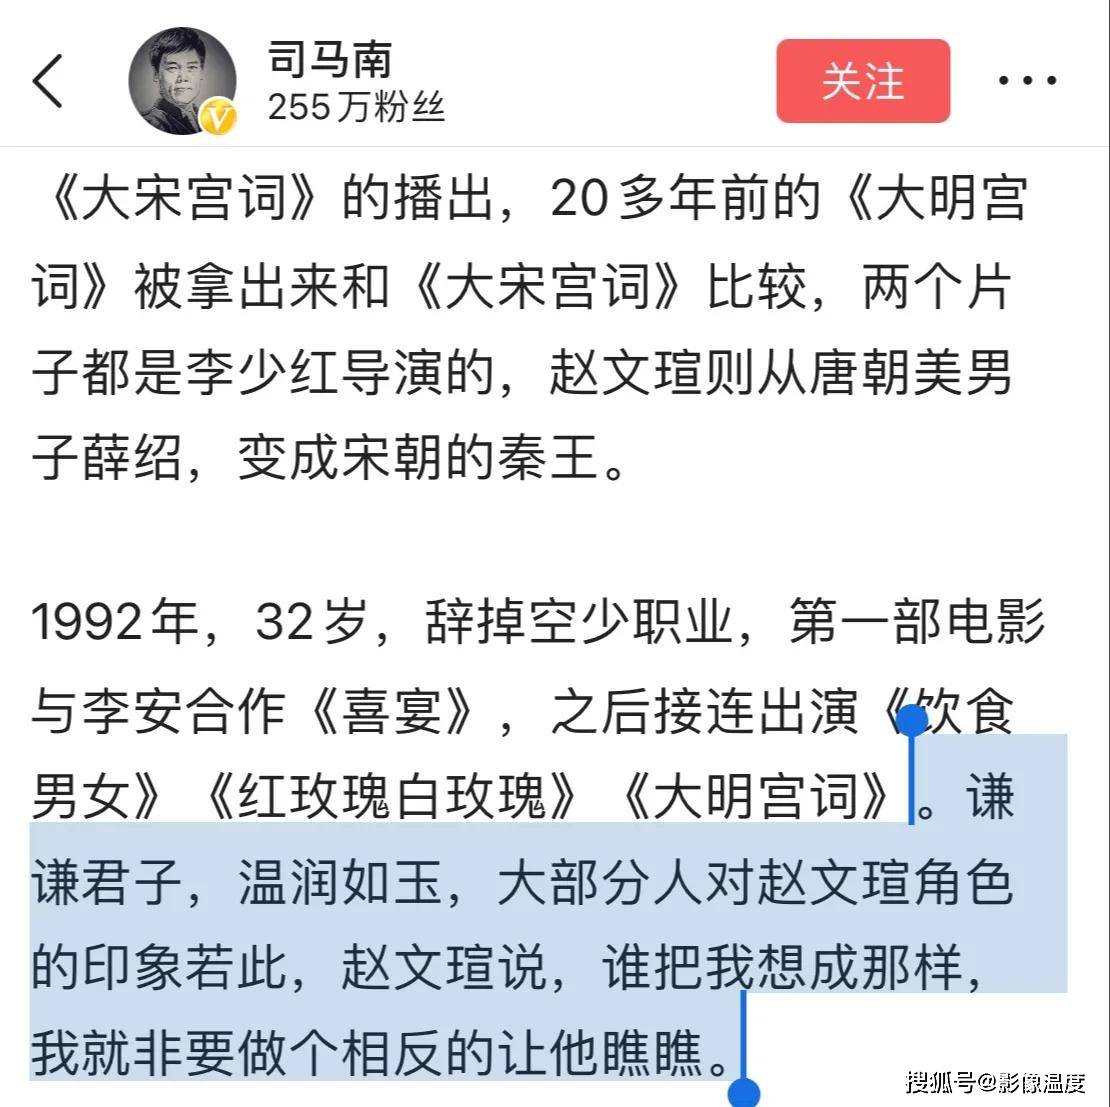 司马南与赵文瑄20多年前去西安一起参加活动,他们曾有过交集